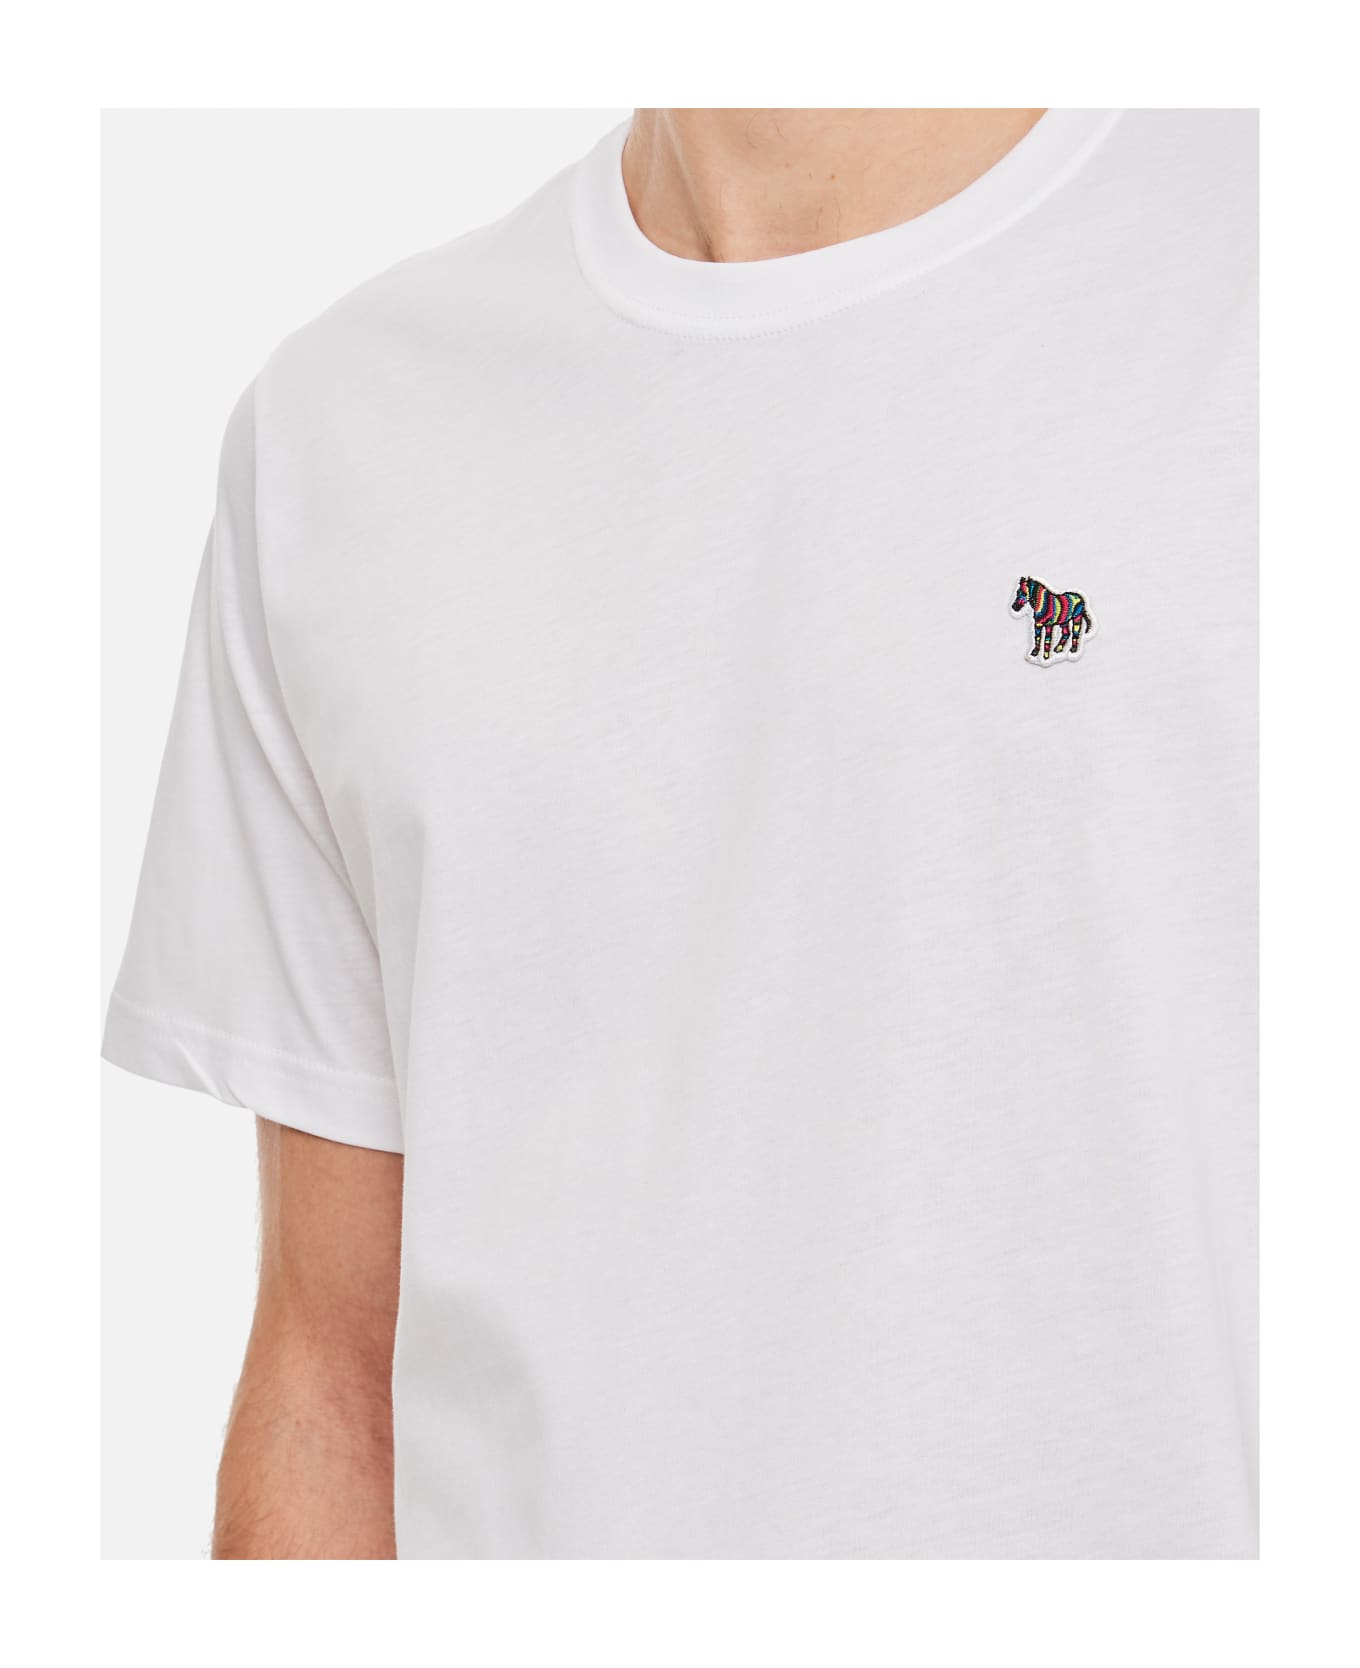 Paul Smith Zebra T-shirt - White